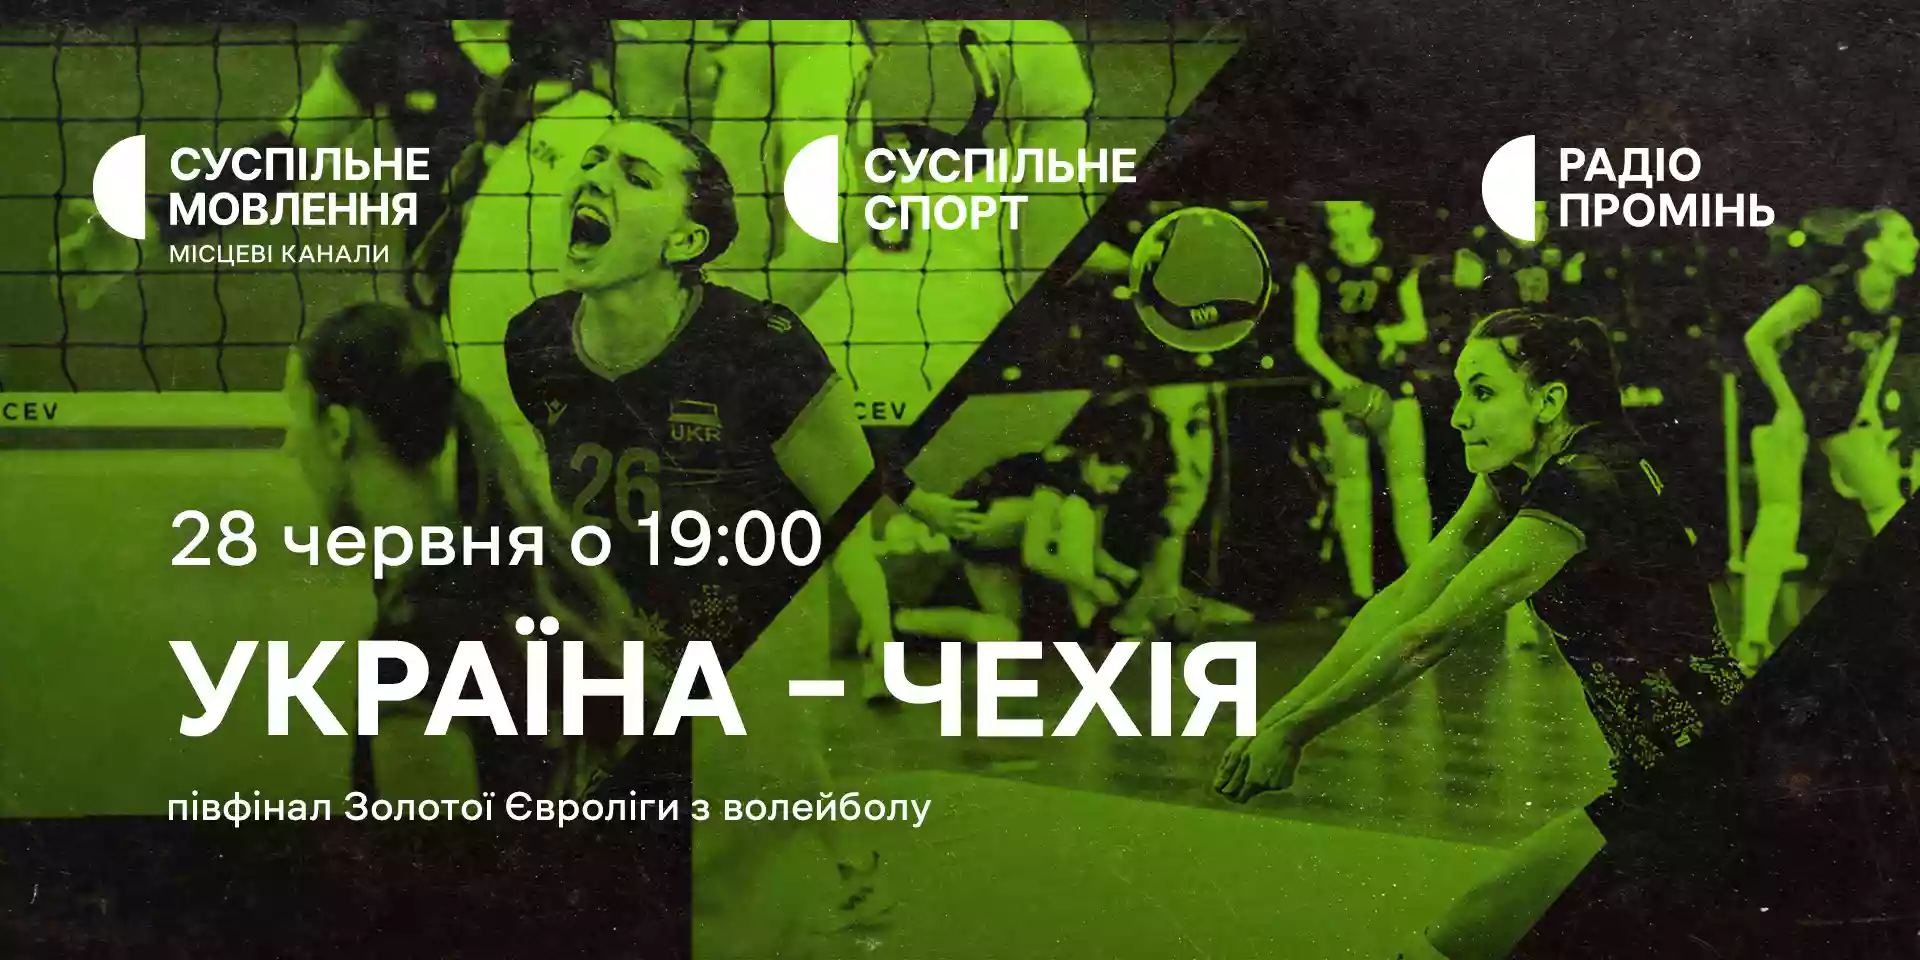 Суспільне транслюватиме матч жіночої збірної України з волейболу у півфіналі Євроліги